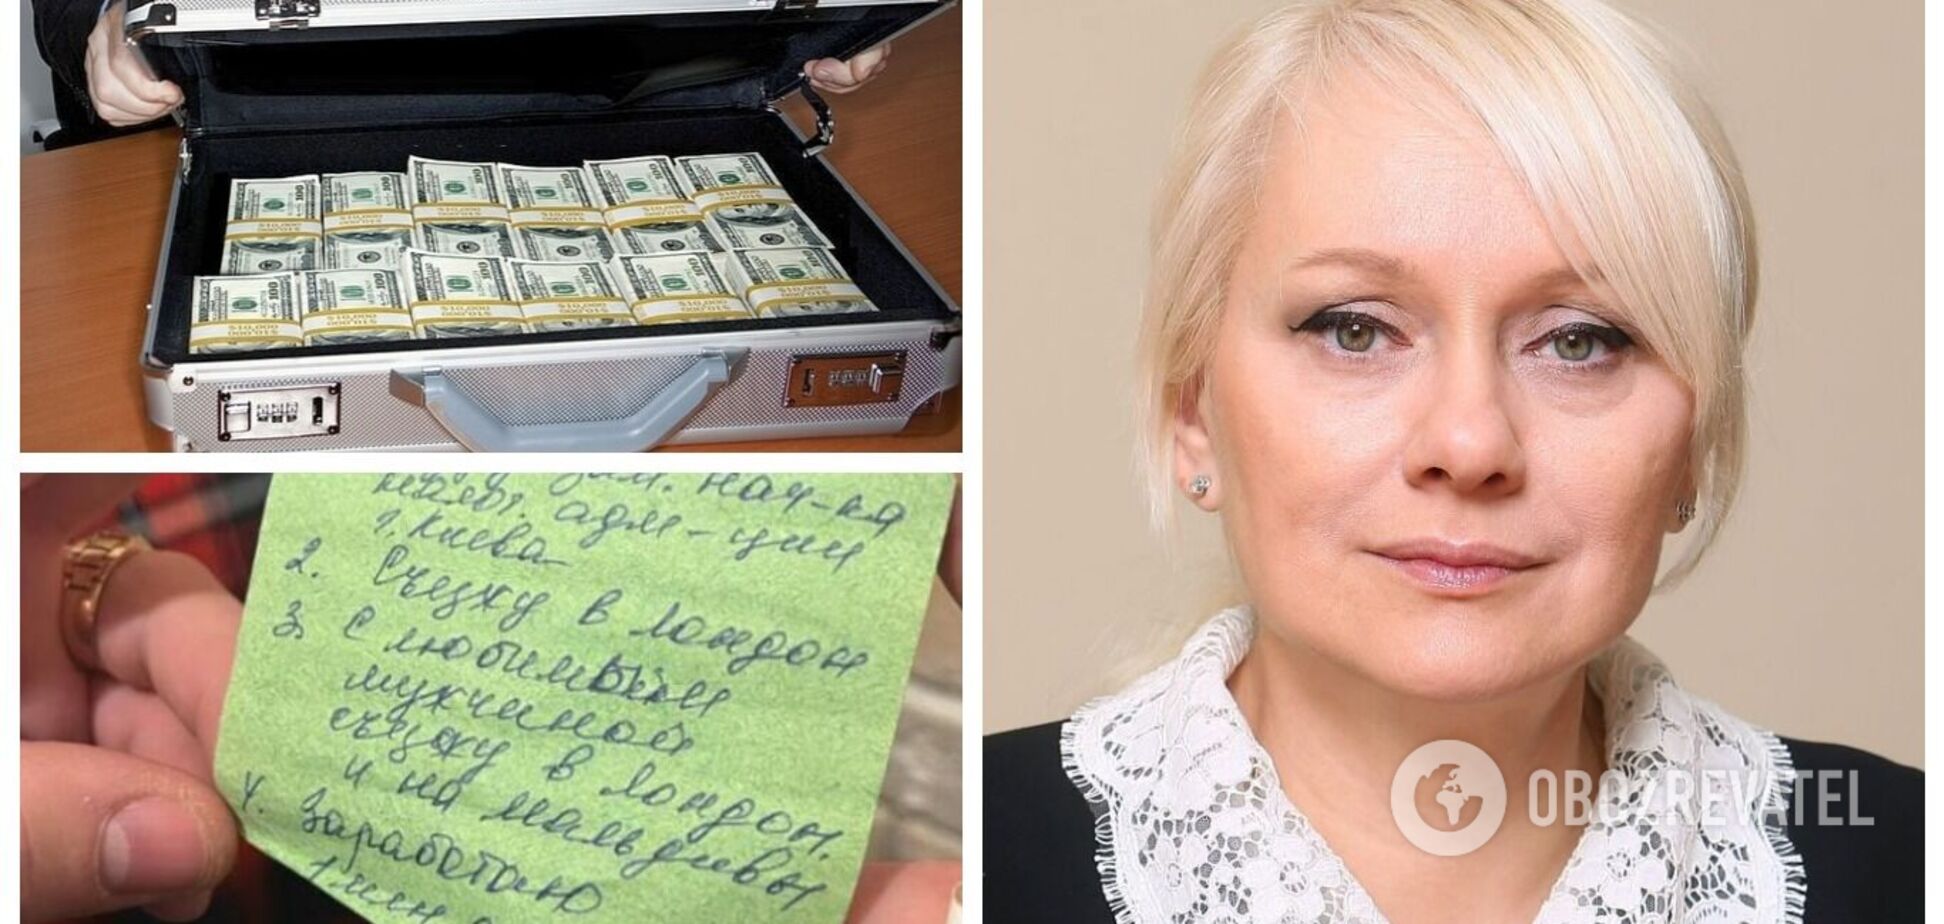 Миллион долларов, соболиная шуба и часы Breguet: сеть взбудоражил список желаний, который нашли во время обыска у чиновницы налоговой Киева